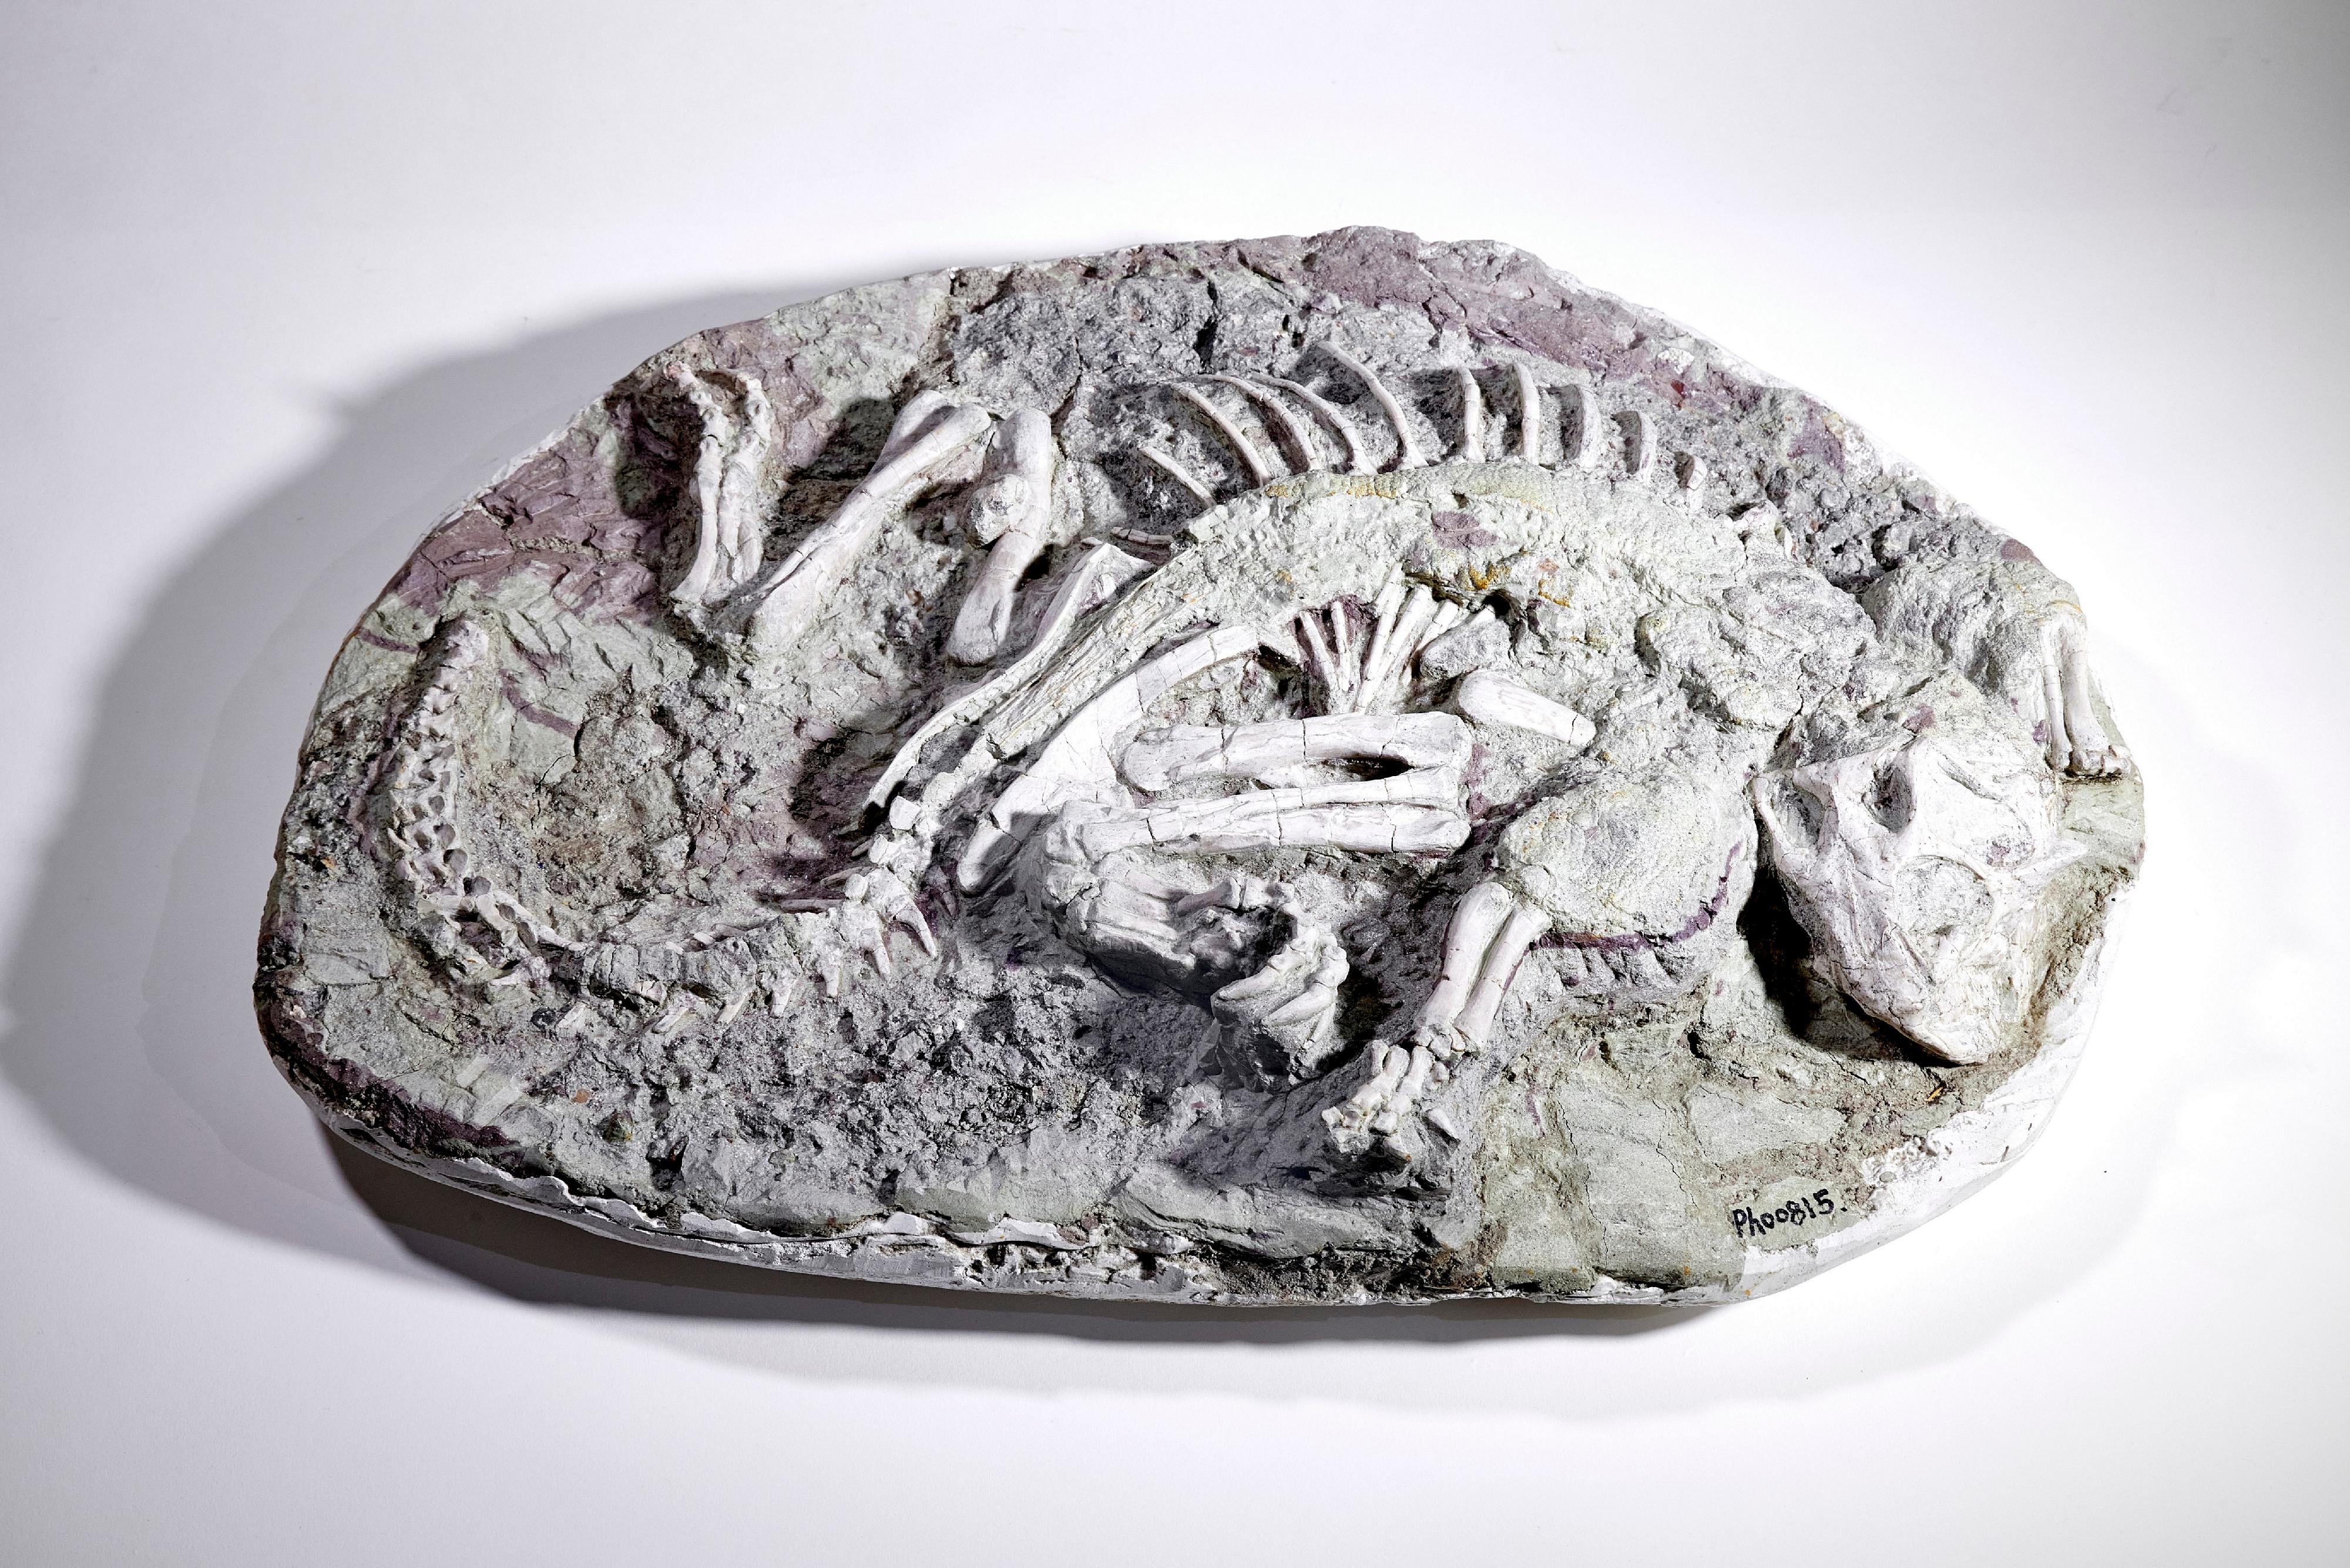 即將歸還予國家自然博物館的鸚鵡嘴龍木乃伊化石。